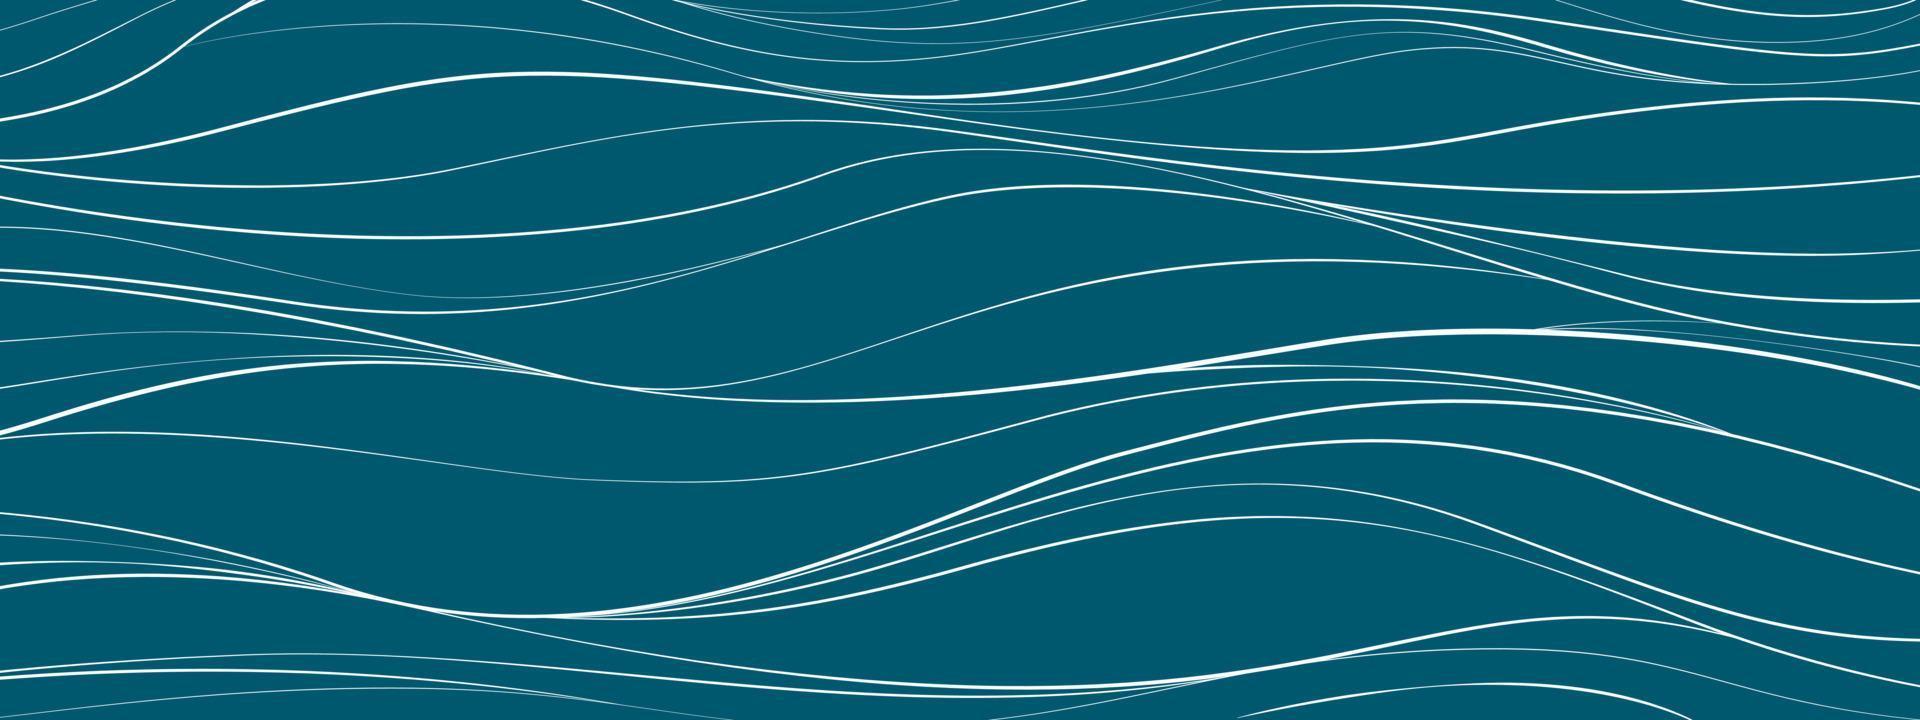 modèle de fond de texture abstraite de l'eau, de la mer, de l'aqua, de l'océan, de la rivière ou de la montagne. doodle courbe de ligne ondulée sans couture vague linéaire forme libre répétition motif bande ondulation. conception d'illustration vectorielle plane vecteur